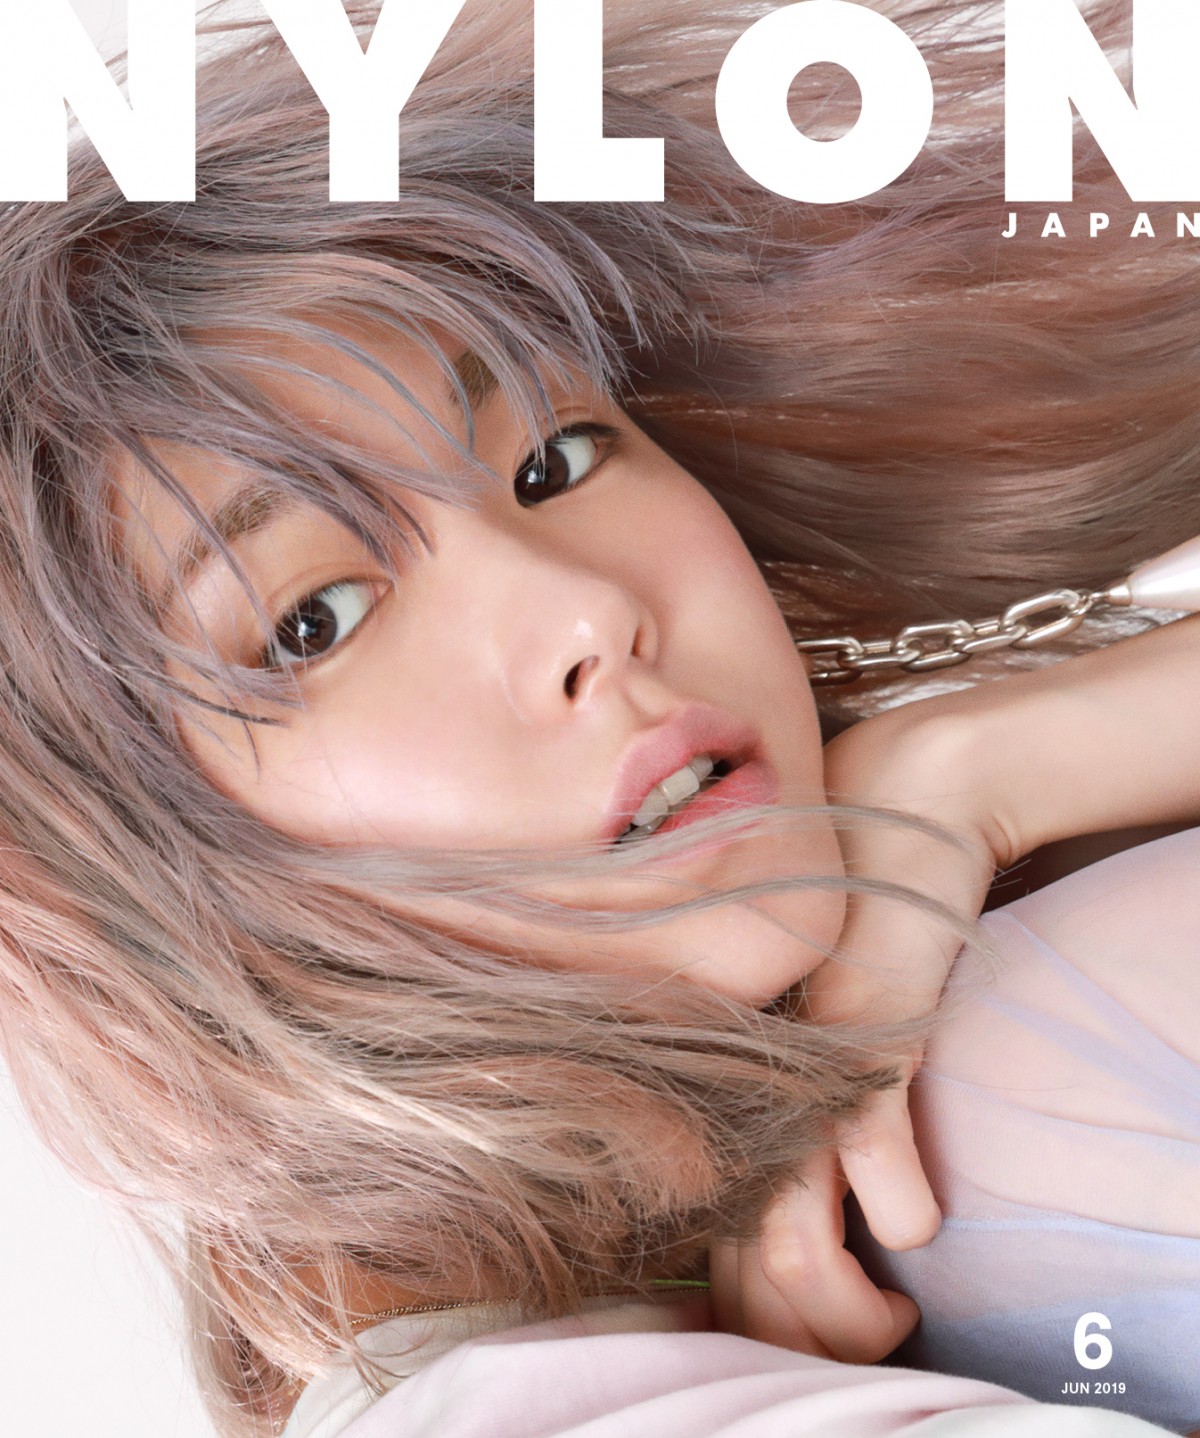 ガッキーが金髪に 新垣結衣が Nylon Japan 表紙で意外な姿を披露 19年4月10日 エンタメ ニュース クランクイン